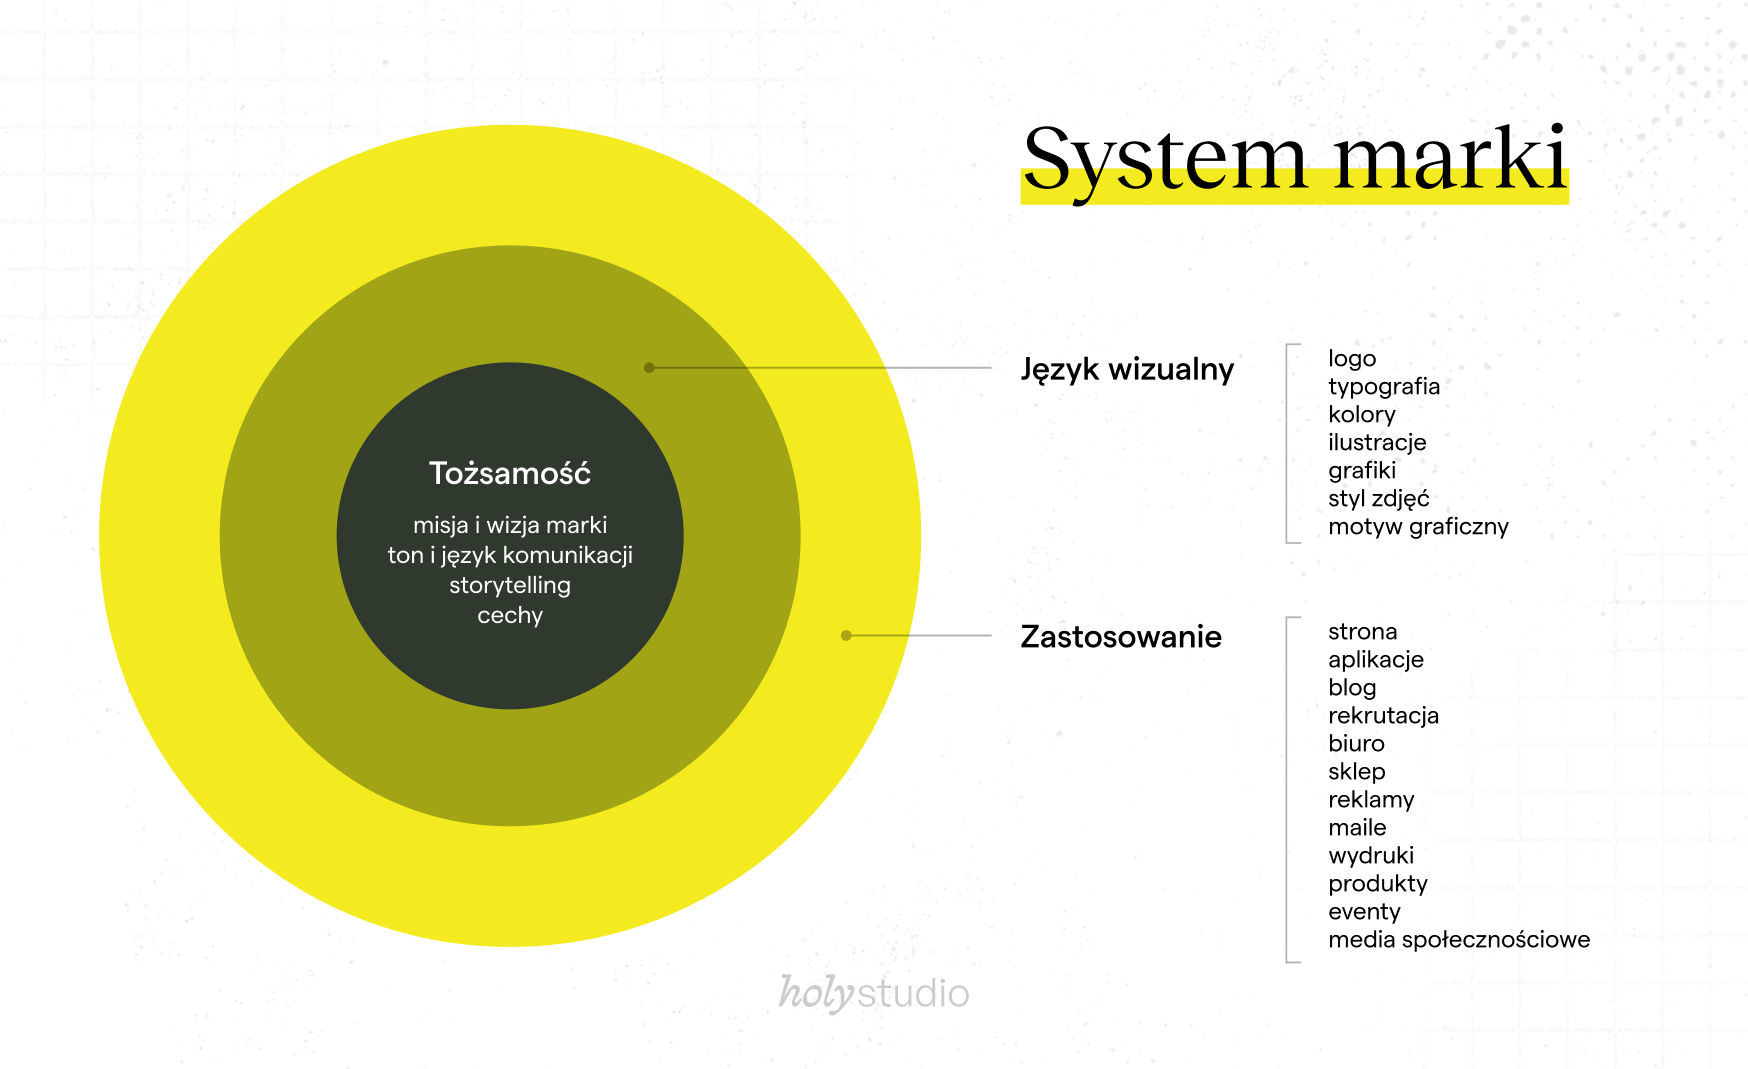 Infografika przedstawiająca system marki za pomocą kół. W centrum znajduje się treść "Tożsamość marki", a na zewnętrznych okręgach opisane są "Język wizualny" oraz "Zastosowanie". Grafika przedstawia, jak tożsamość marki definiuje język.